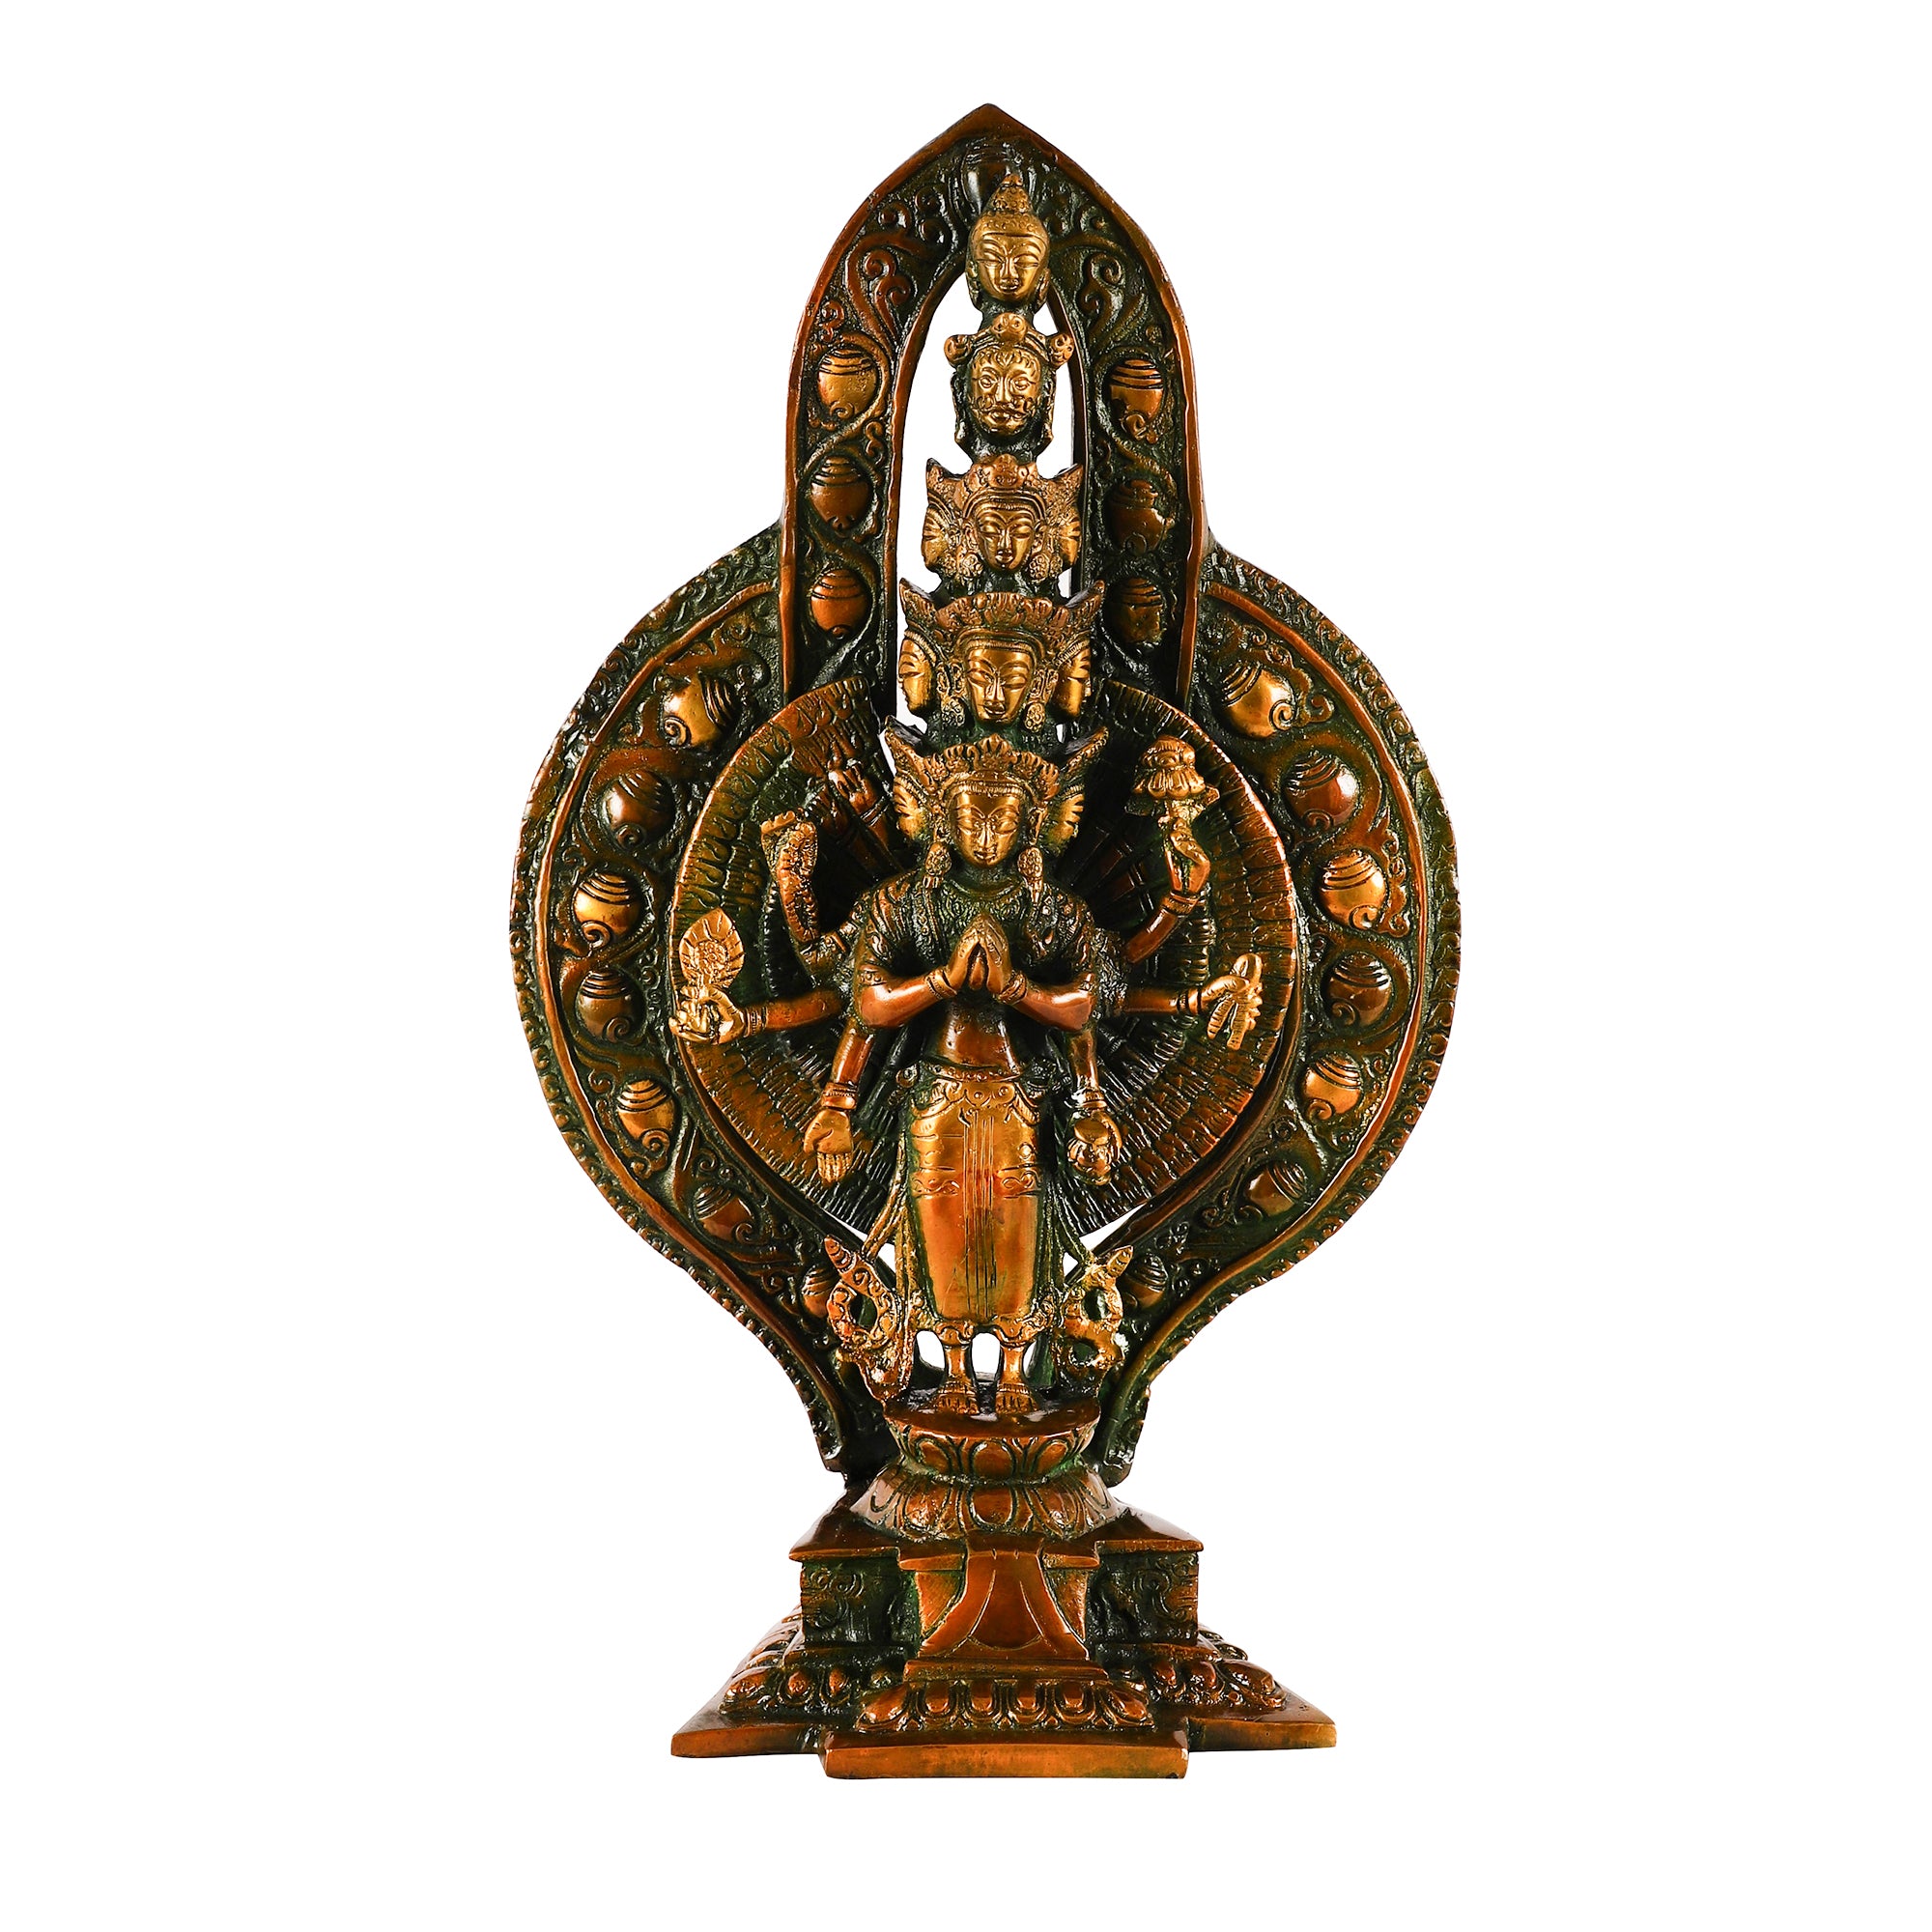 Brass Avlokeswar Idol (Large)